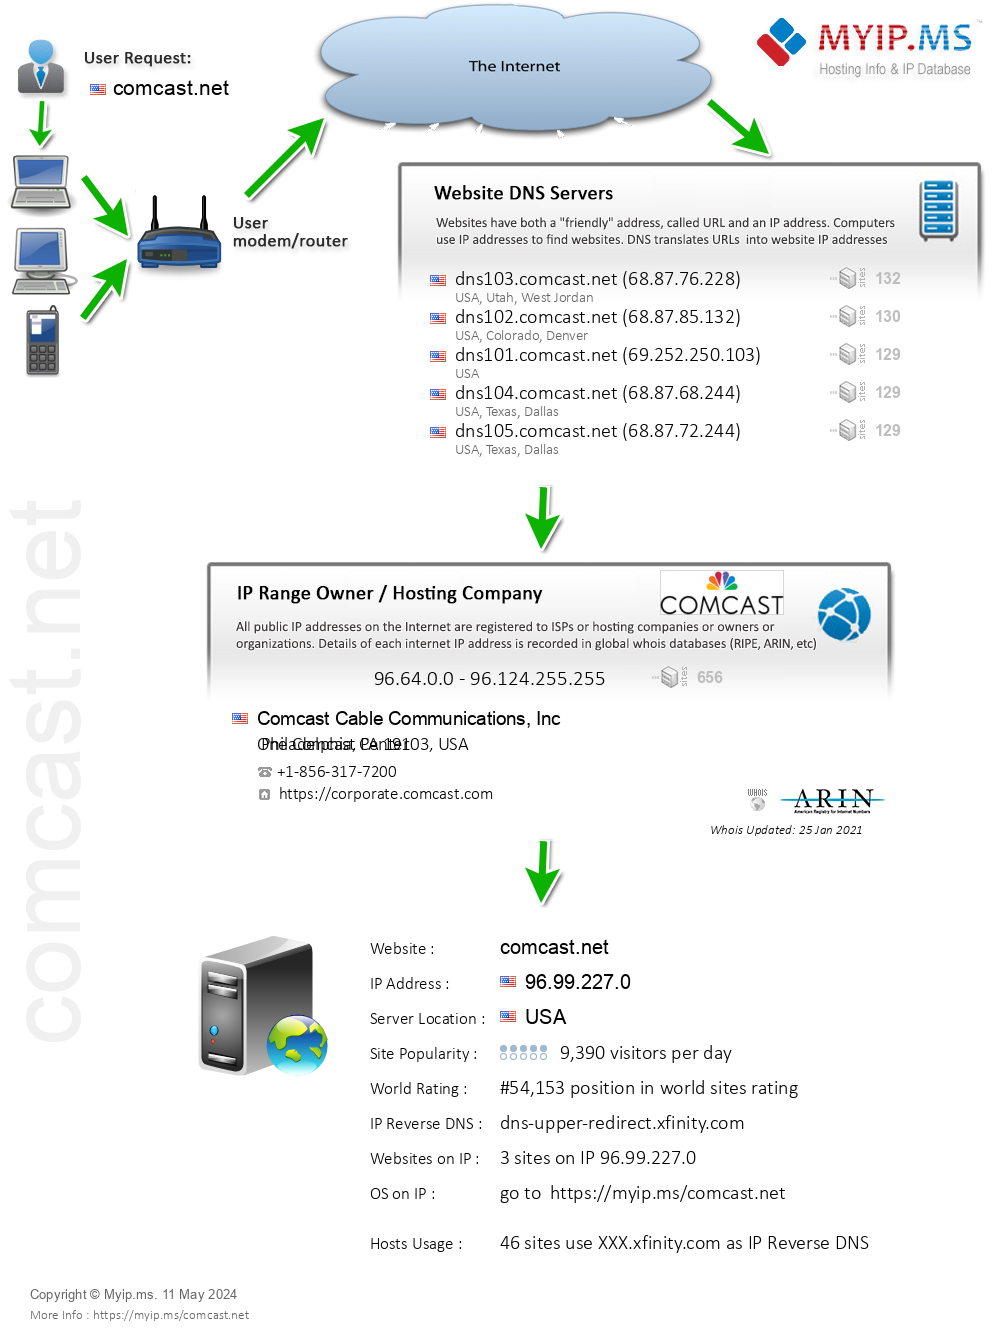 Comcast.net - Website Hosting Visual IP Diagram